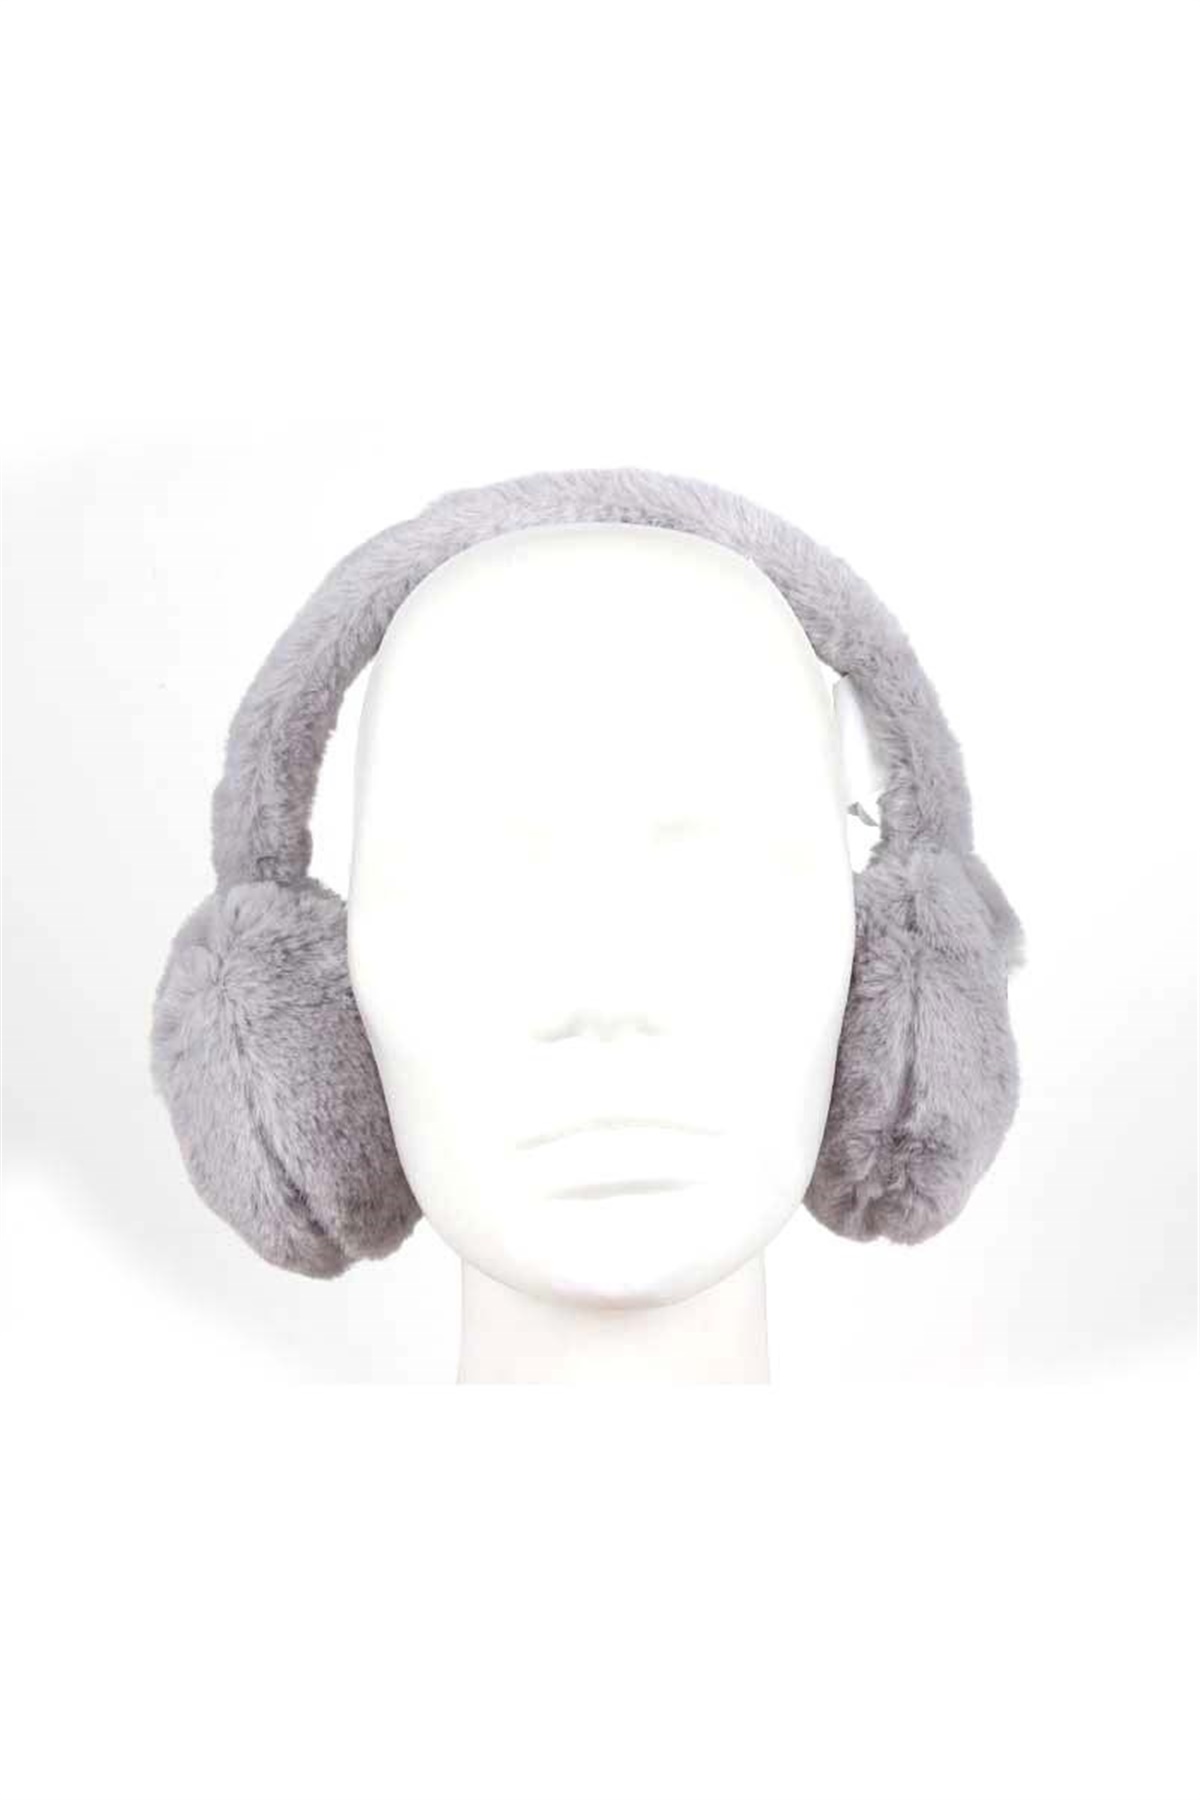 Kız Çocuk Kışlık Kulaklık, Kalpli Peluş Kulaklık CK5061 - Gri